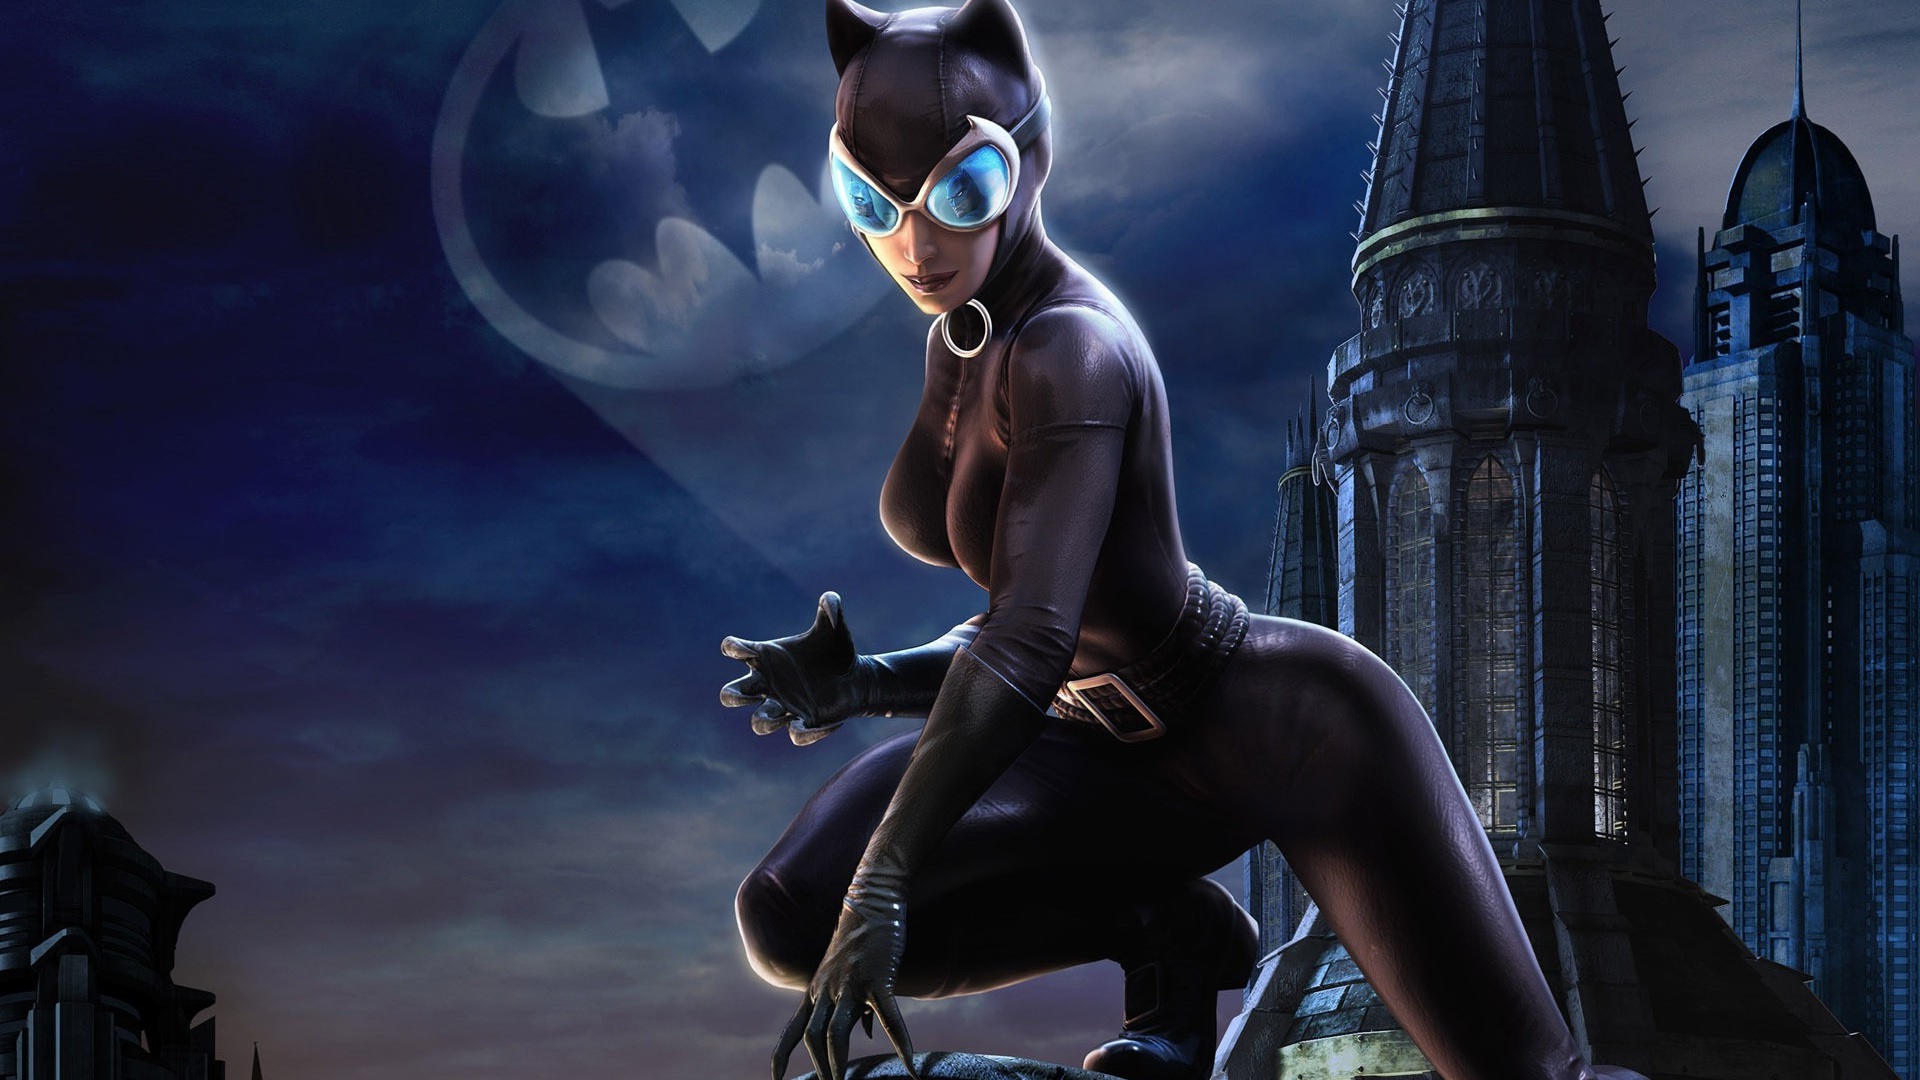 catwoman hd wallpaper,fictional character,catwoman,cg artwork,batman,supervillain